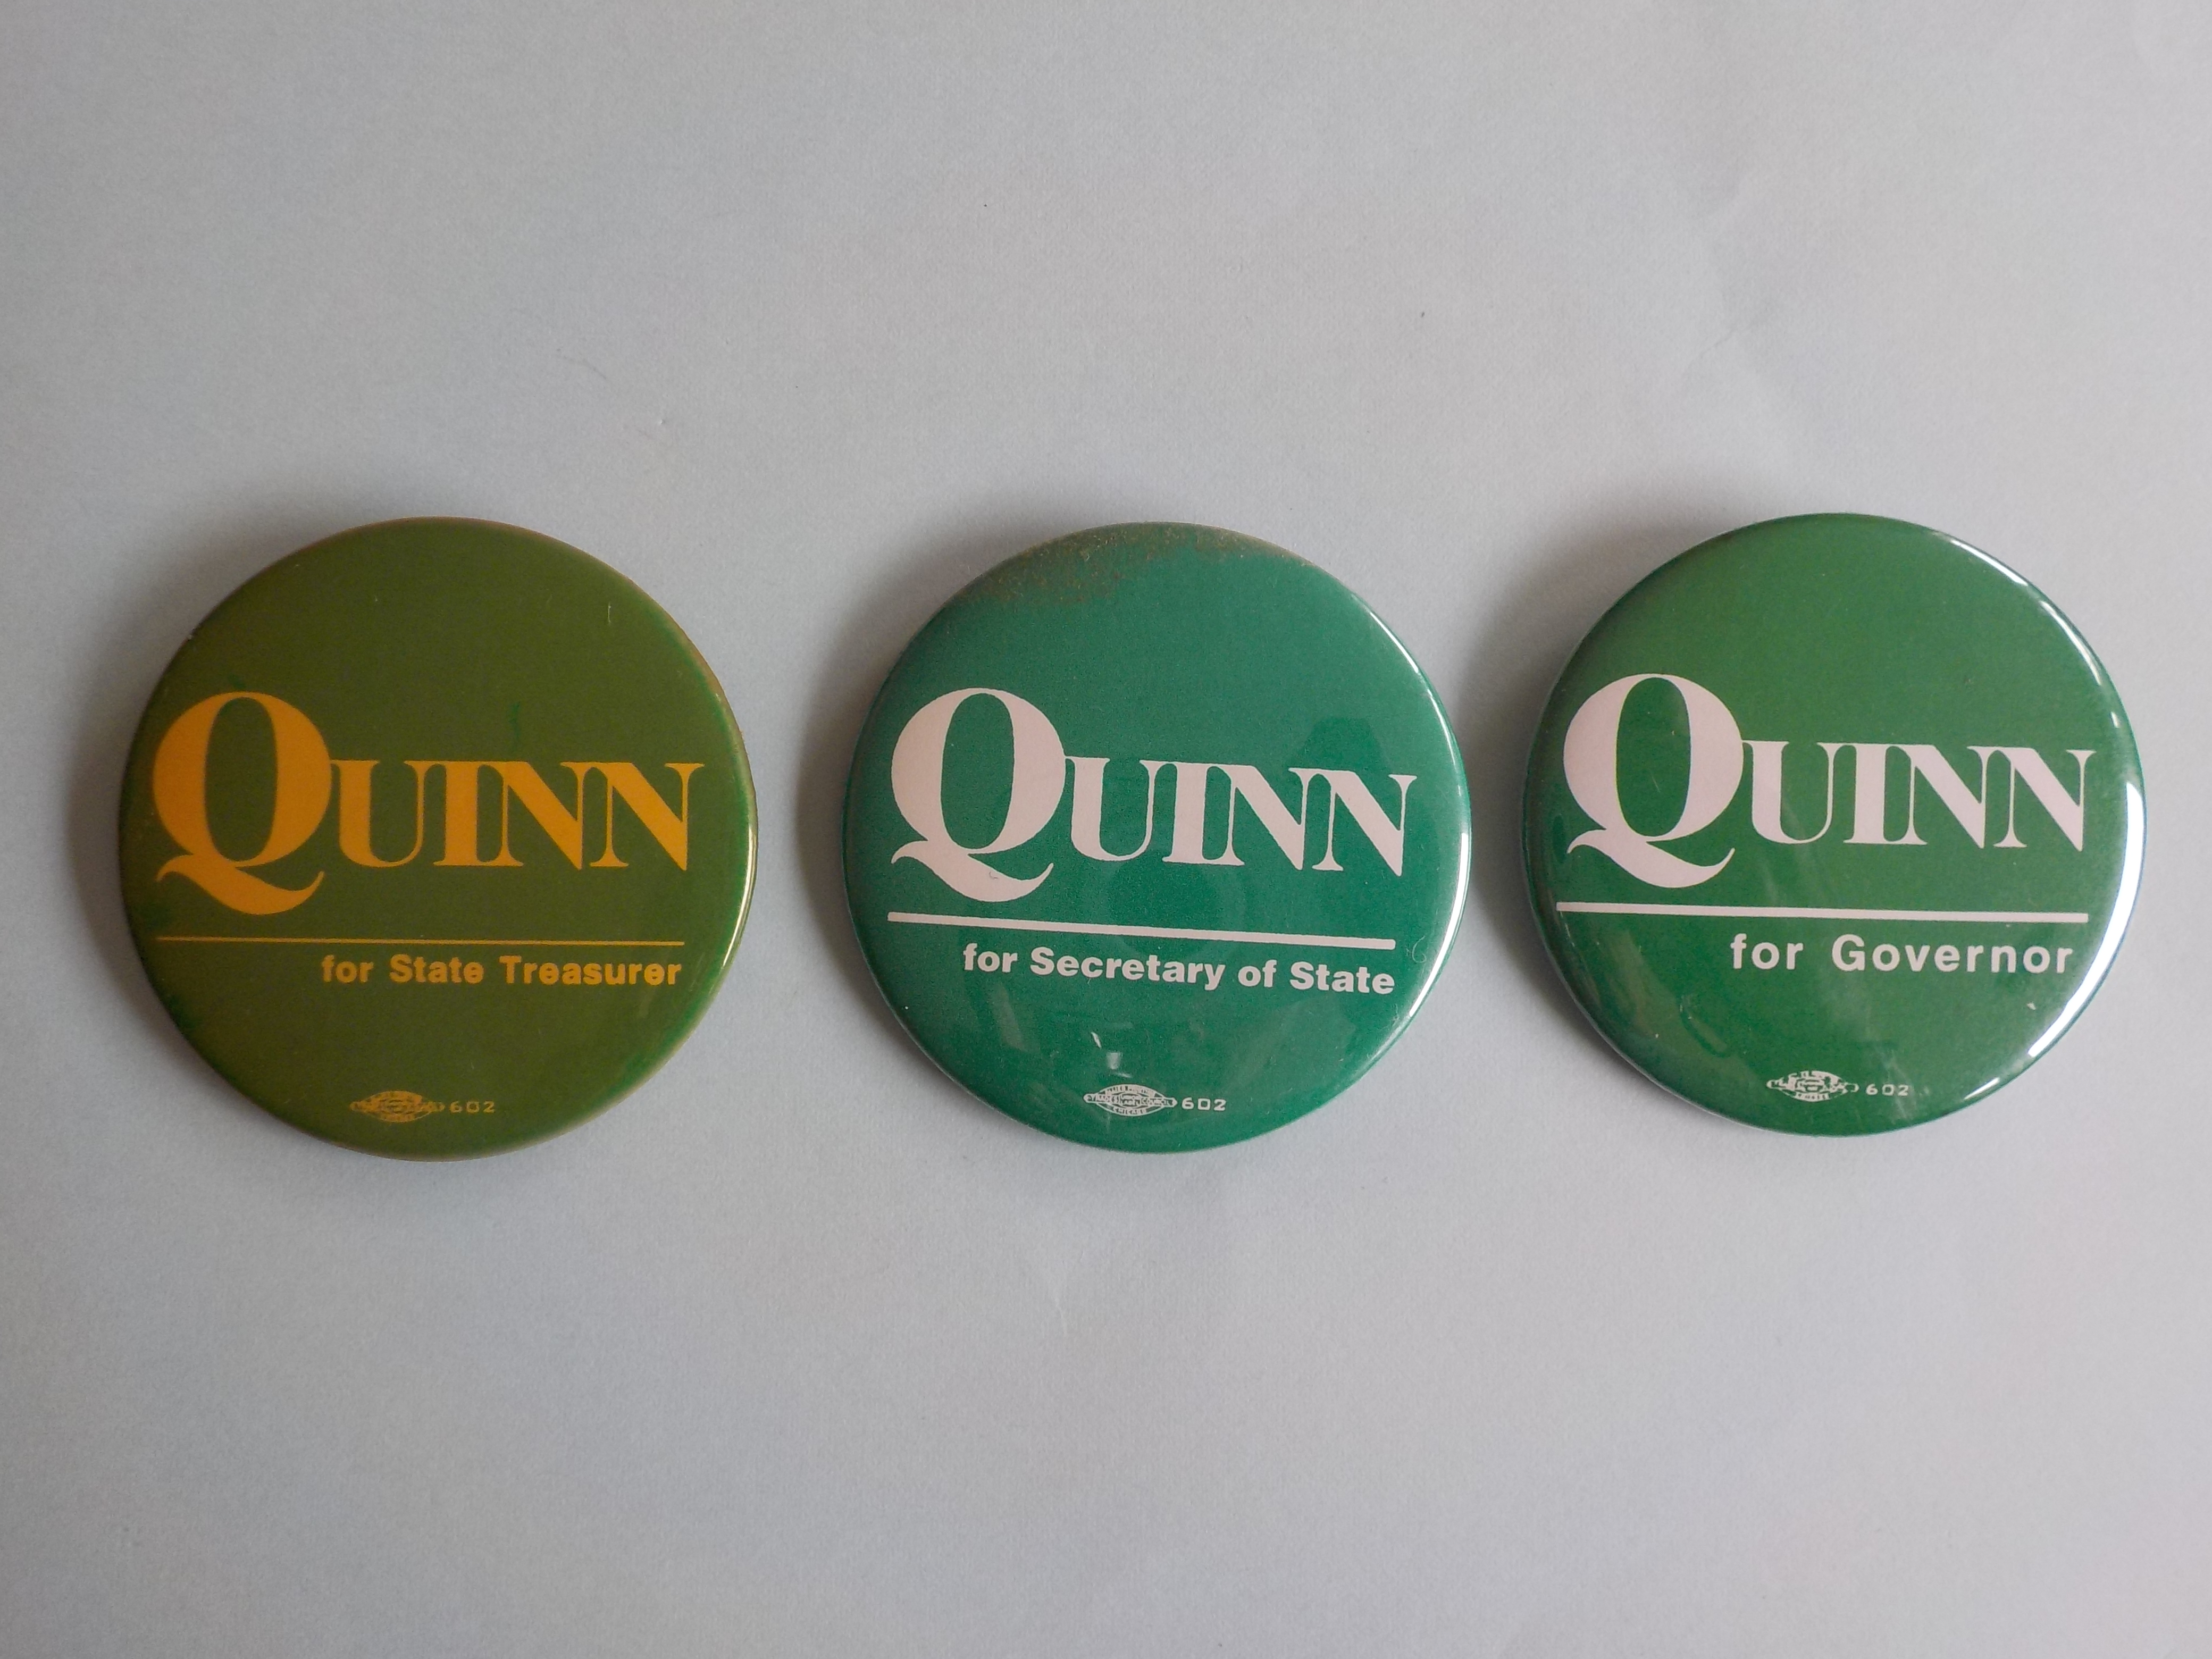 Quinn buttons